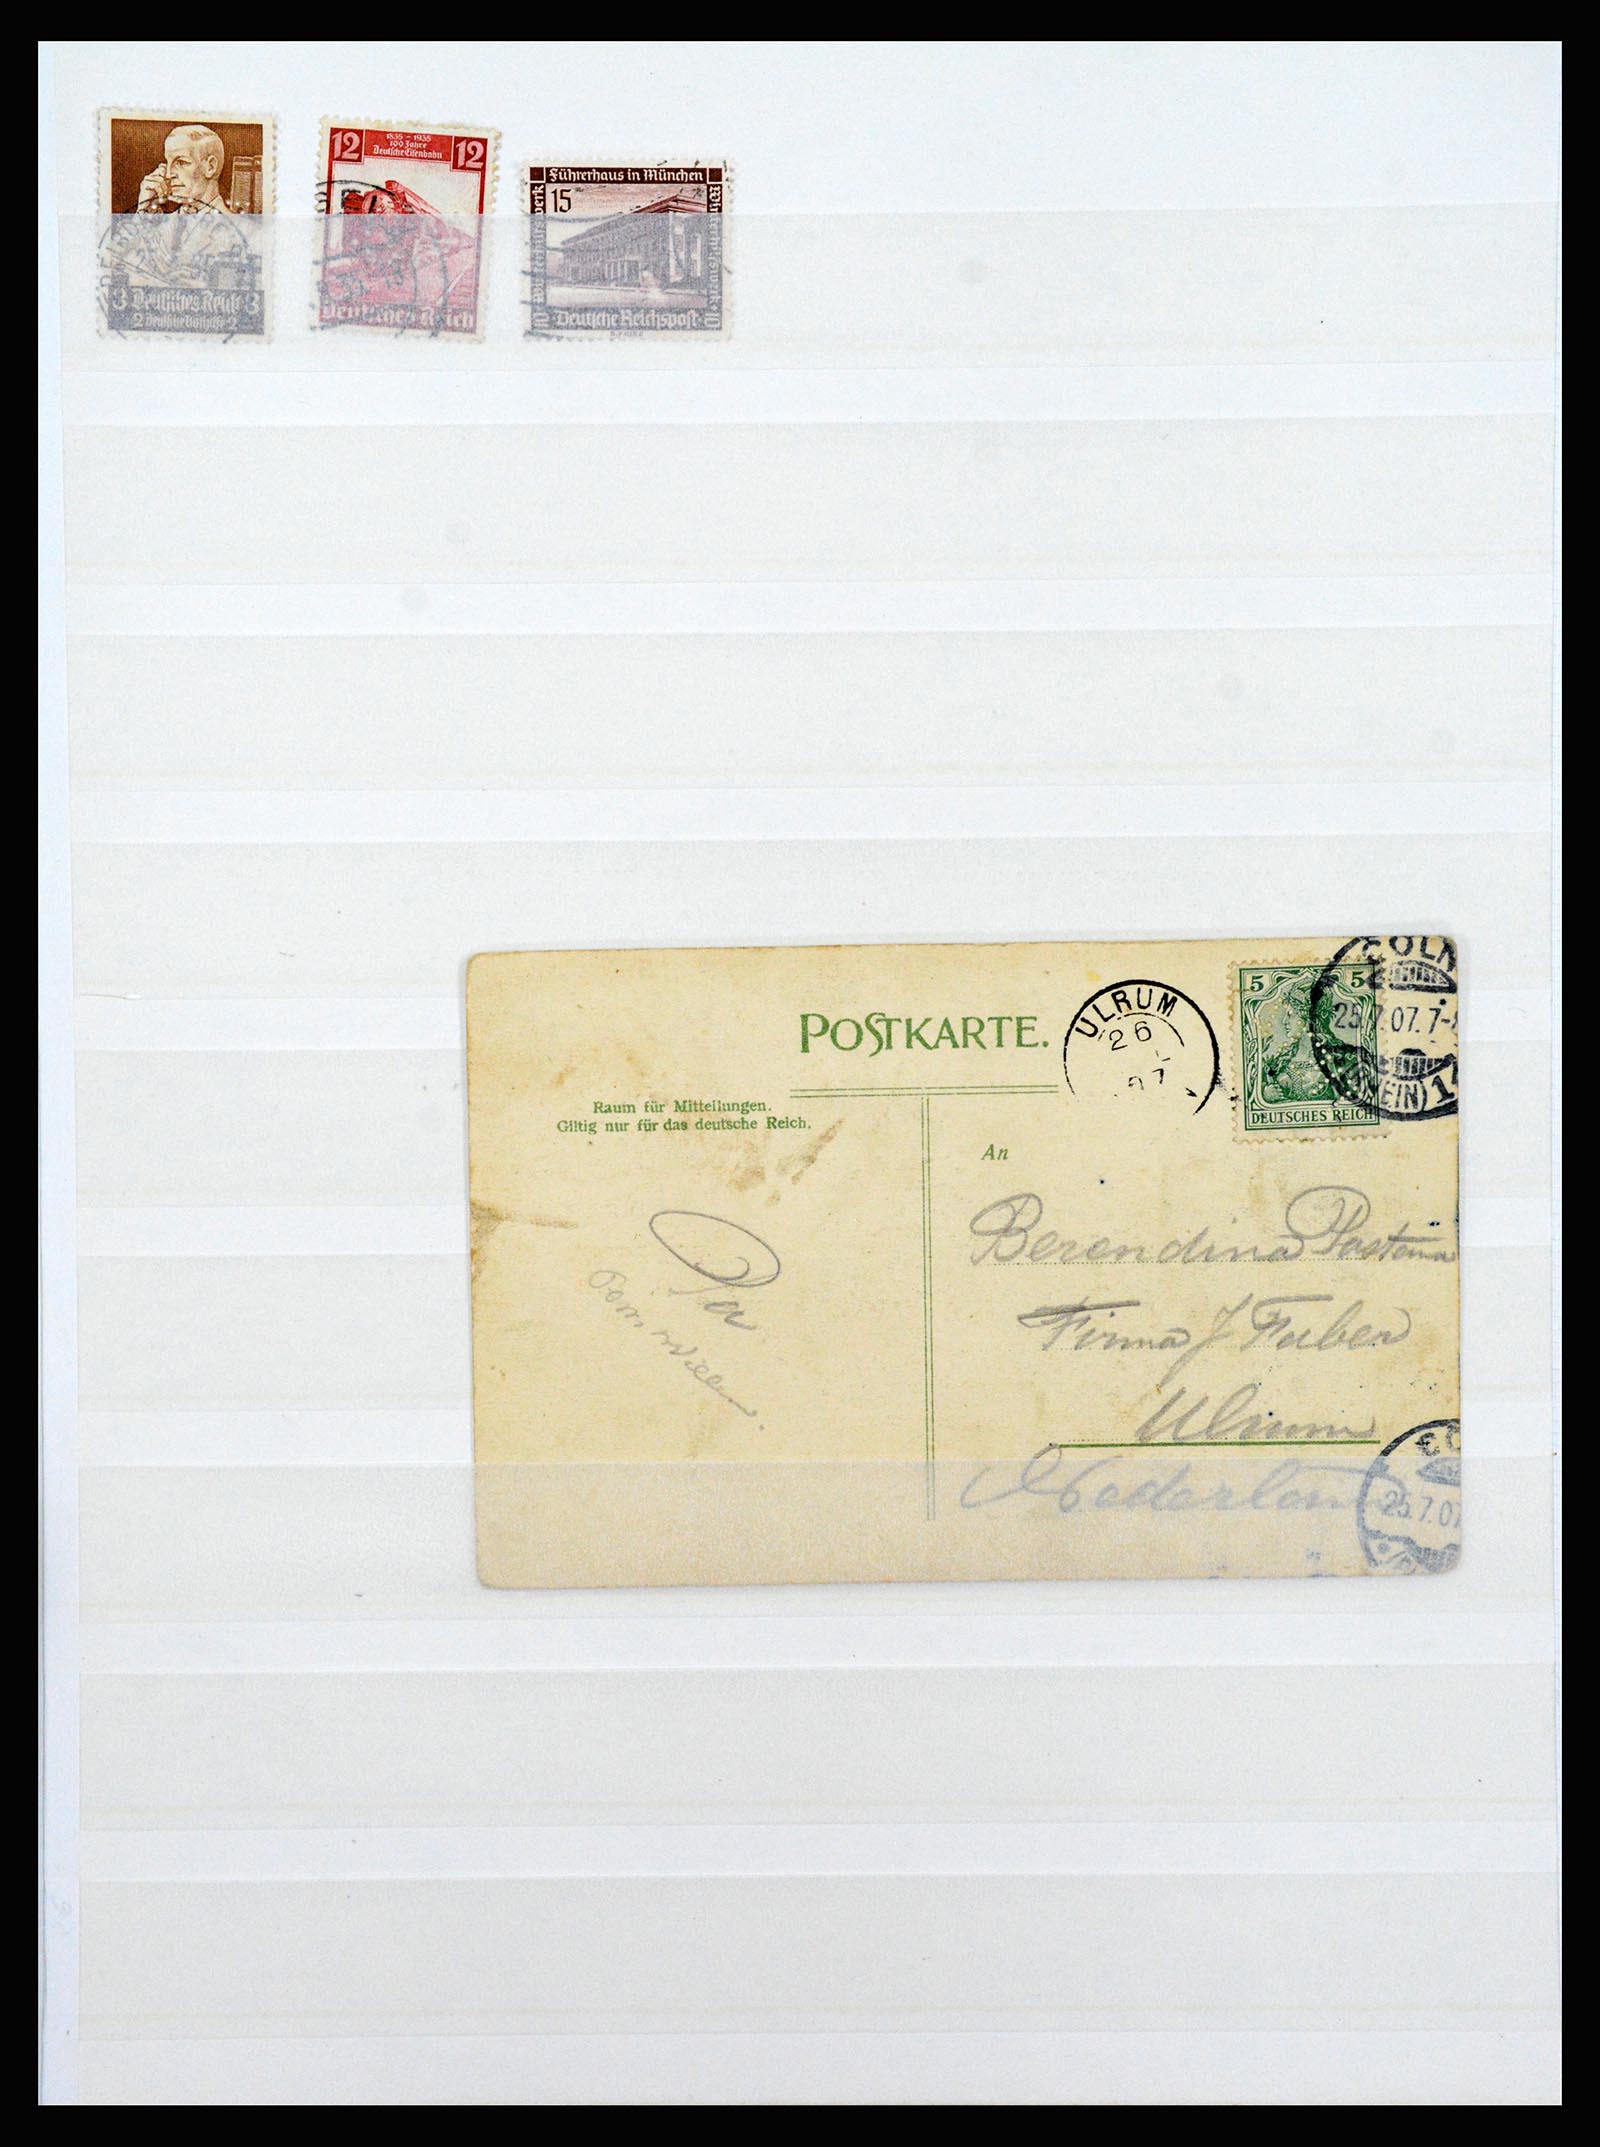 37254 010 - Stamp collection 37254 German Reich perfins 1900-1945.